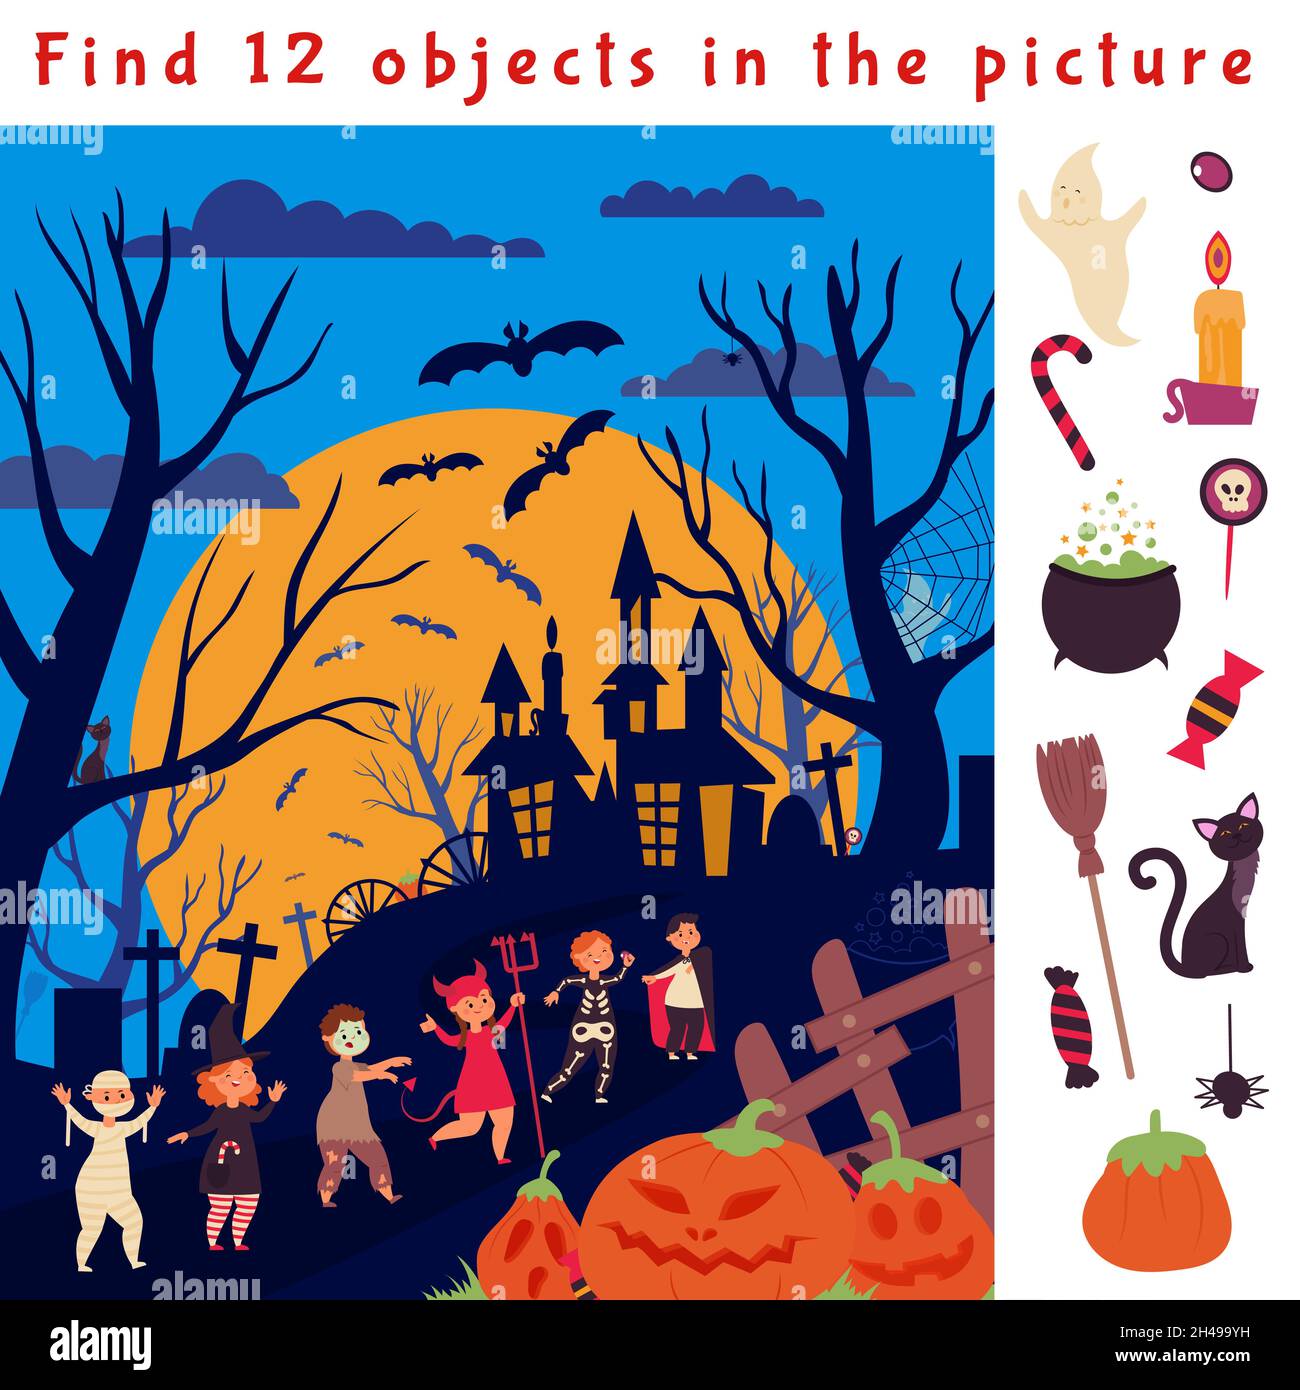 Niños En La Zona De Juegos. Buscar 10 Objetos Ocultos En La Imagen  Ilustración del Vector - Ilustración de muchacho, juego: 221244393